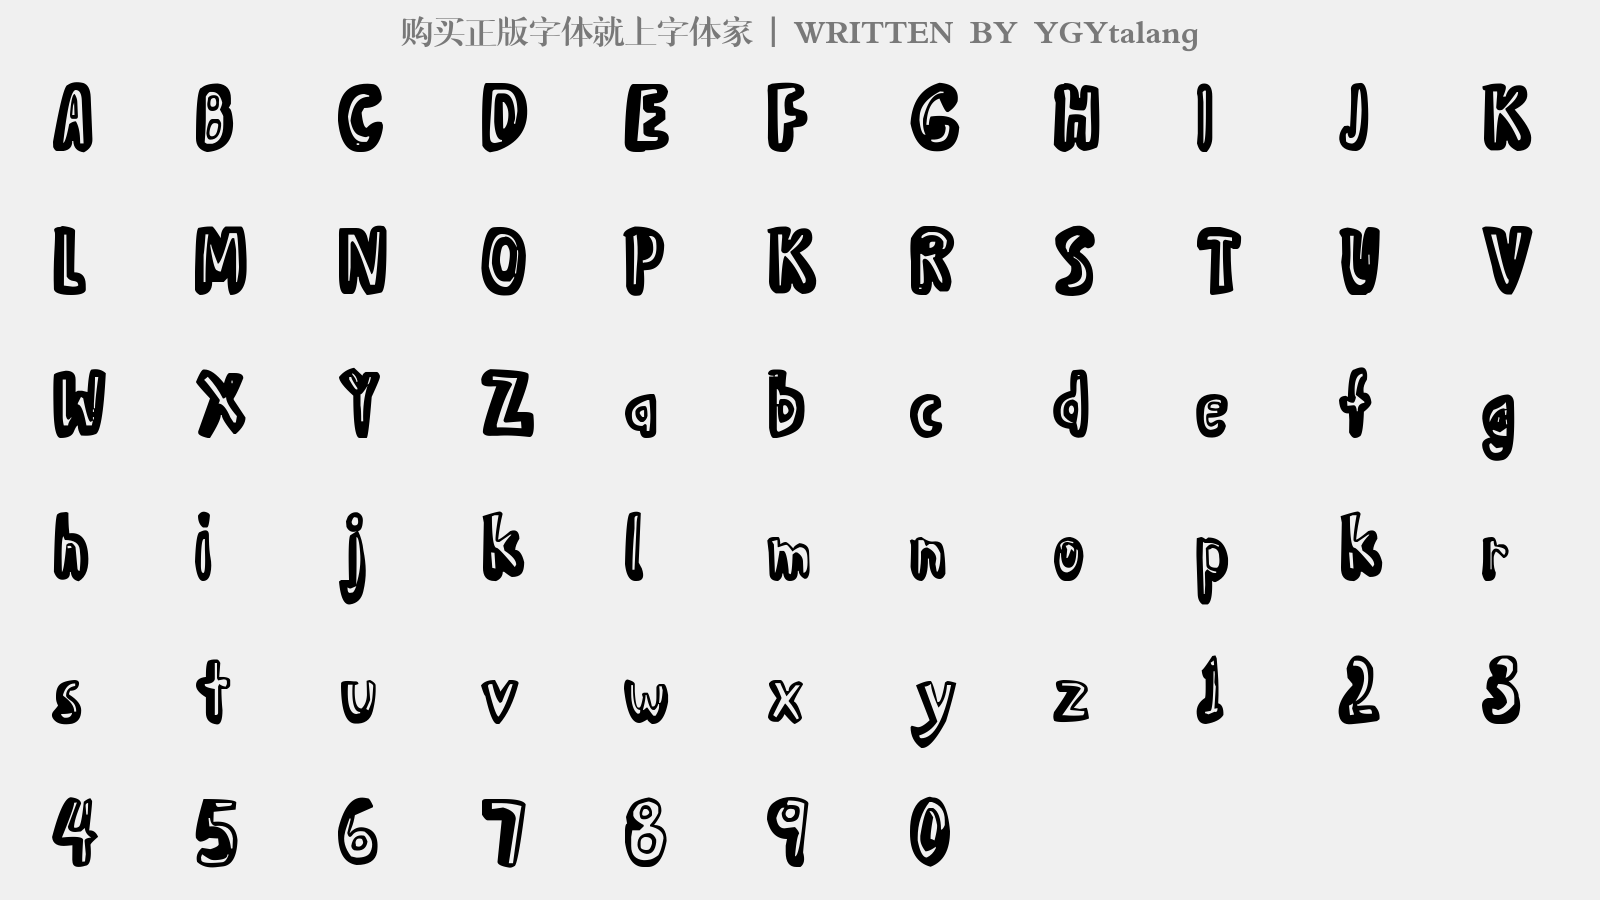 YGYtalang - 大写字母/小写字母/数字